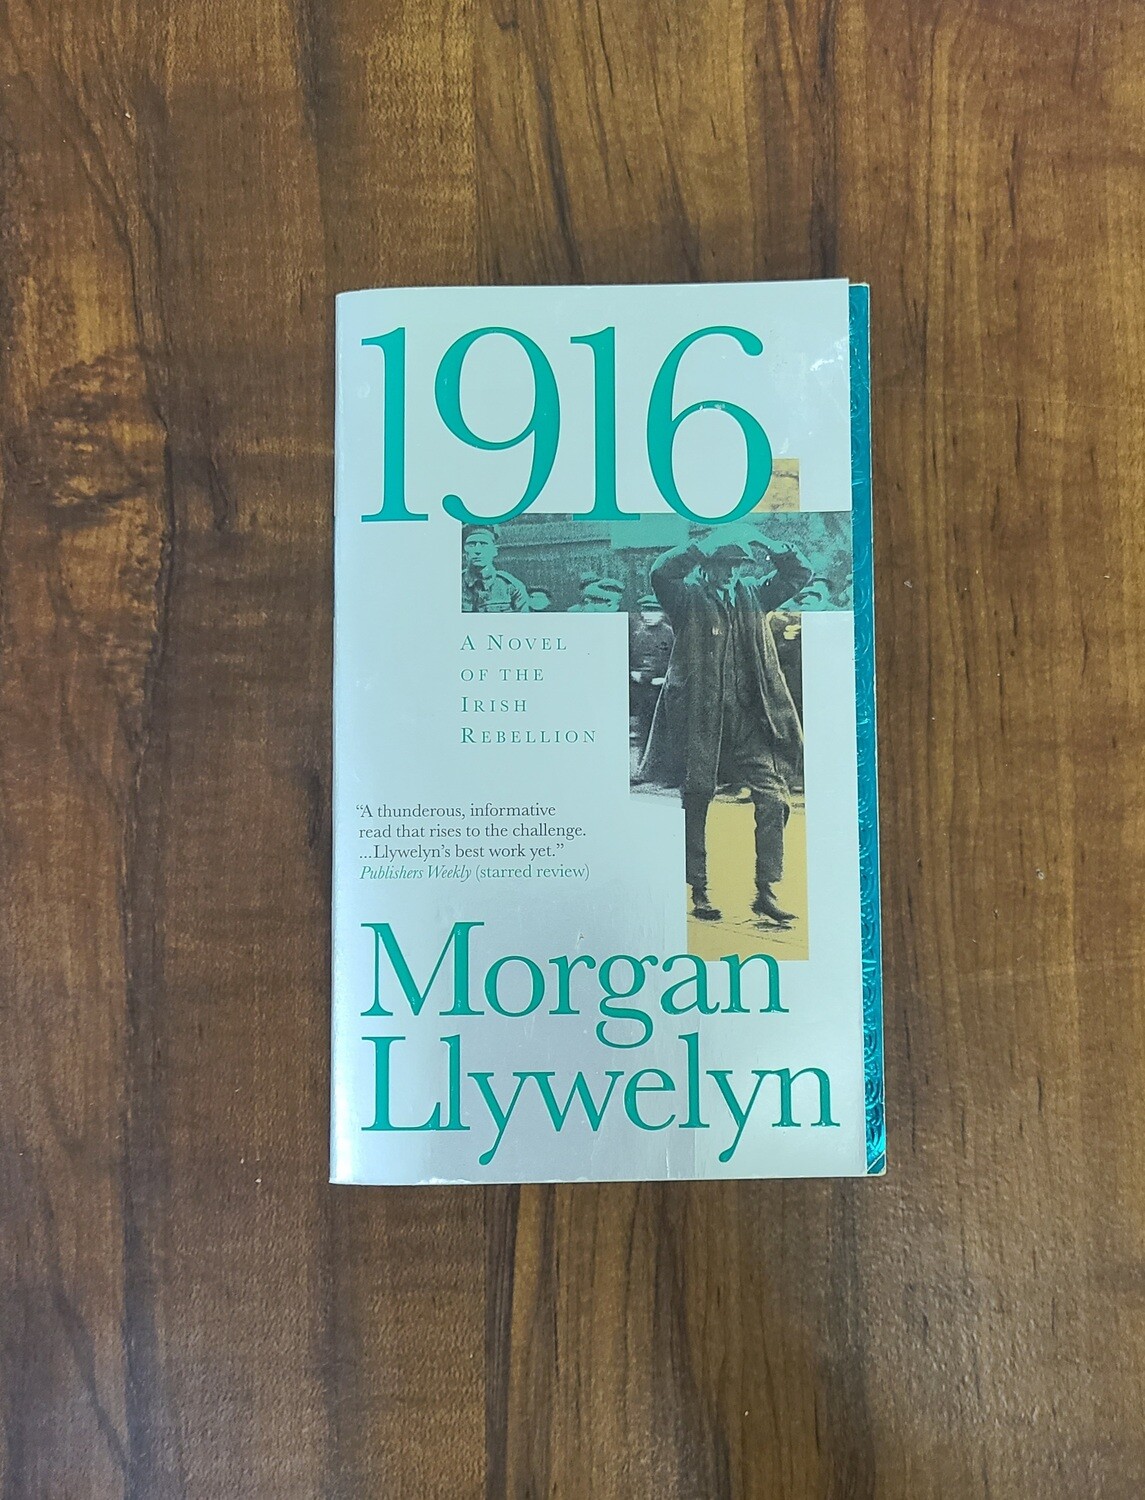 1916 by Morgan Llywelyn